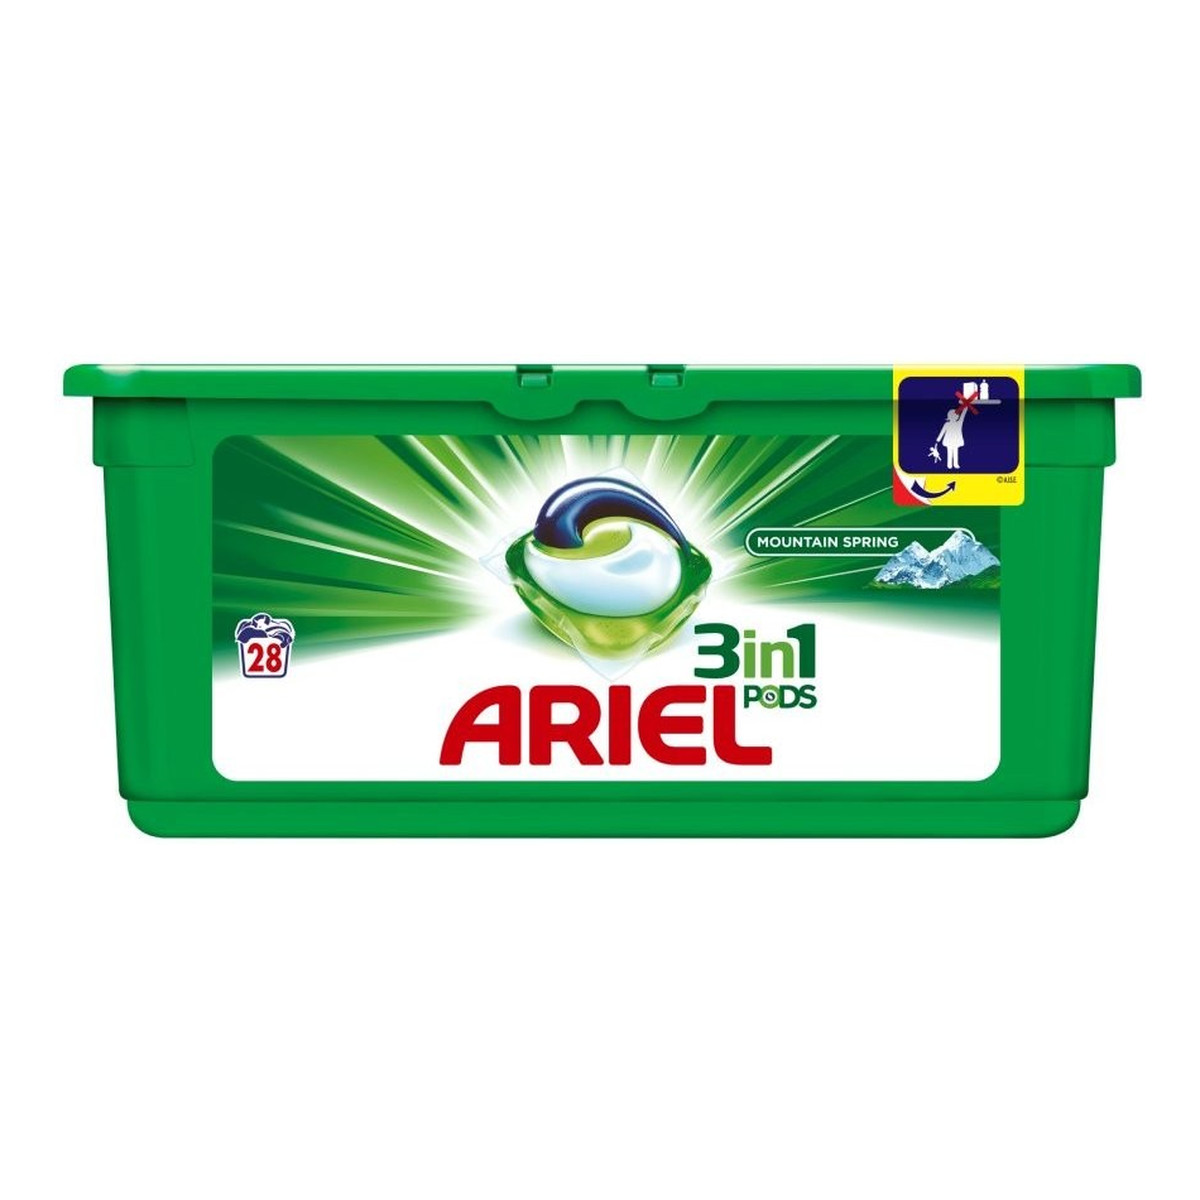 Ariel 3in1 Mountain Spring Kapsułki do prania białego 28 prań